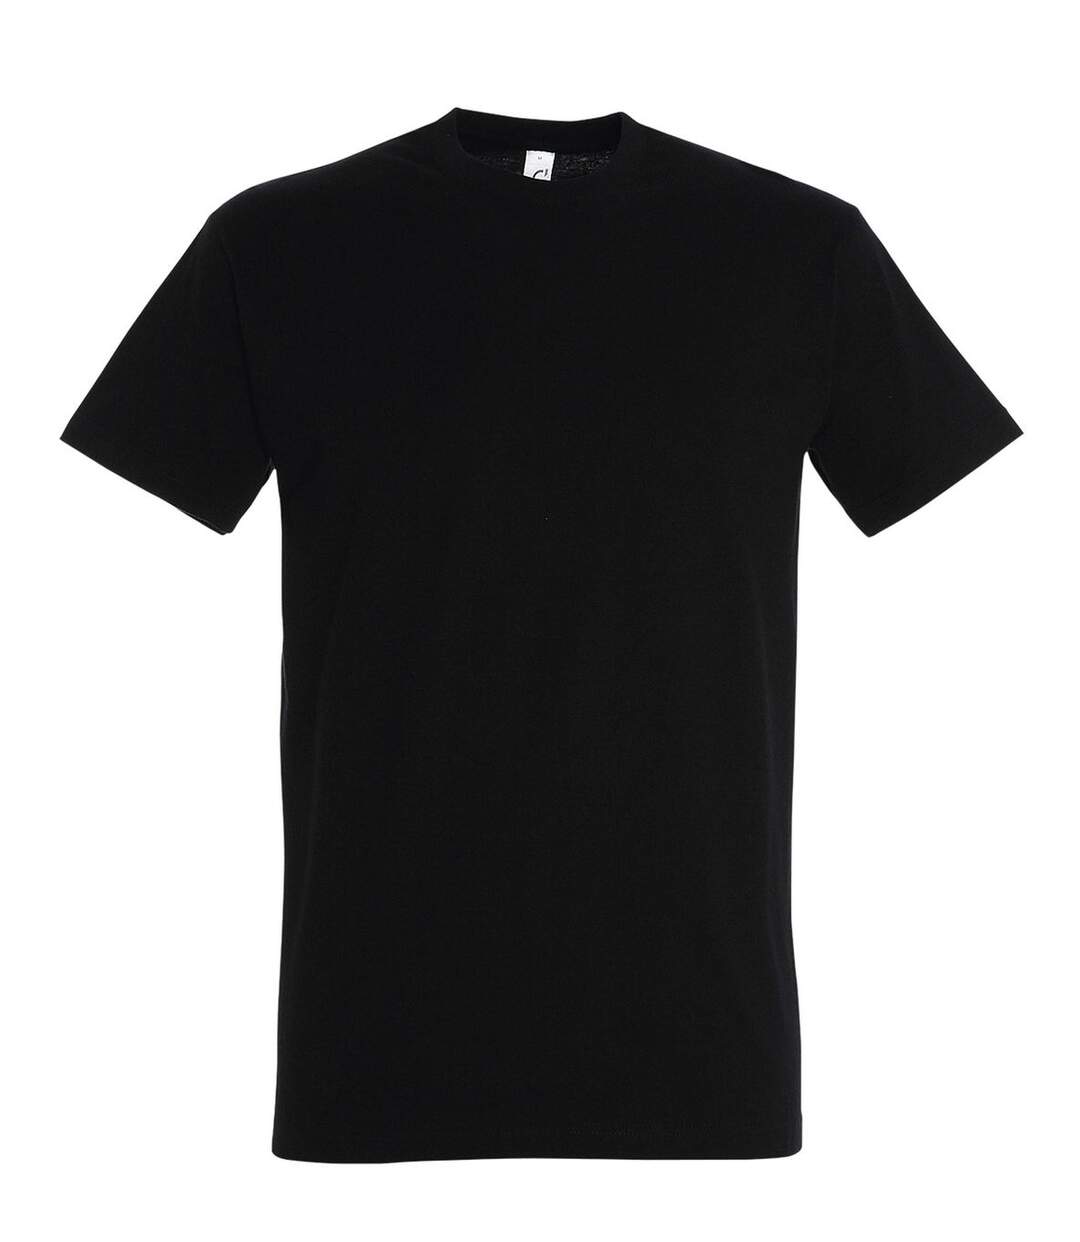 T-shirt manches courtes - Mixte - 11500 - noir